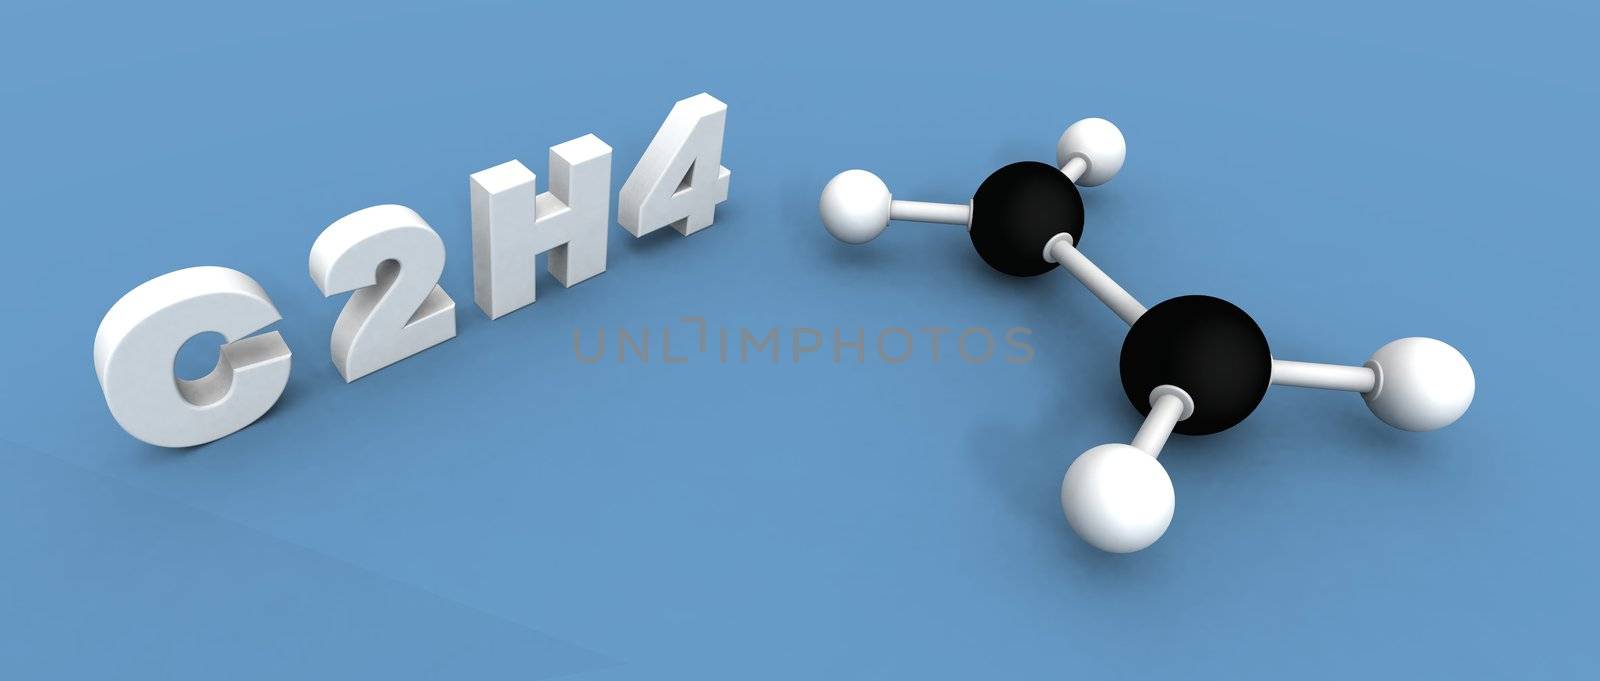 ethylene molecule by jbouzou